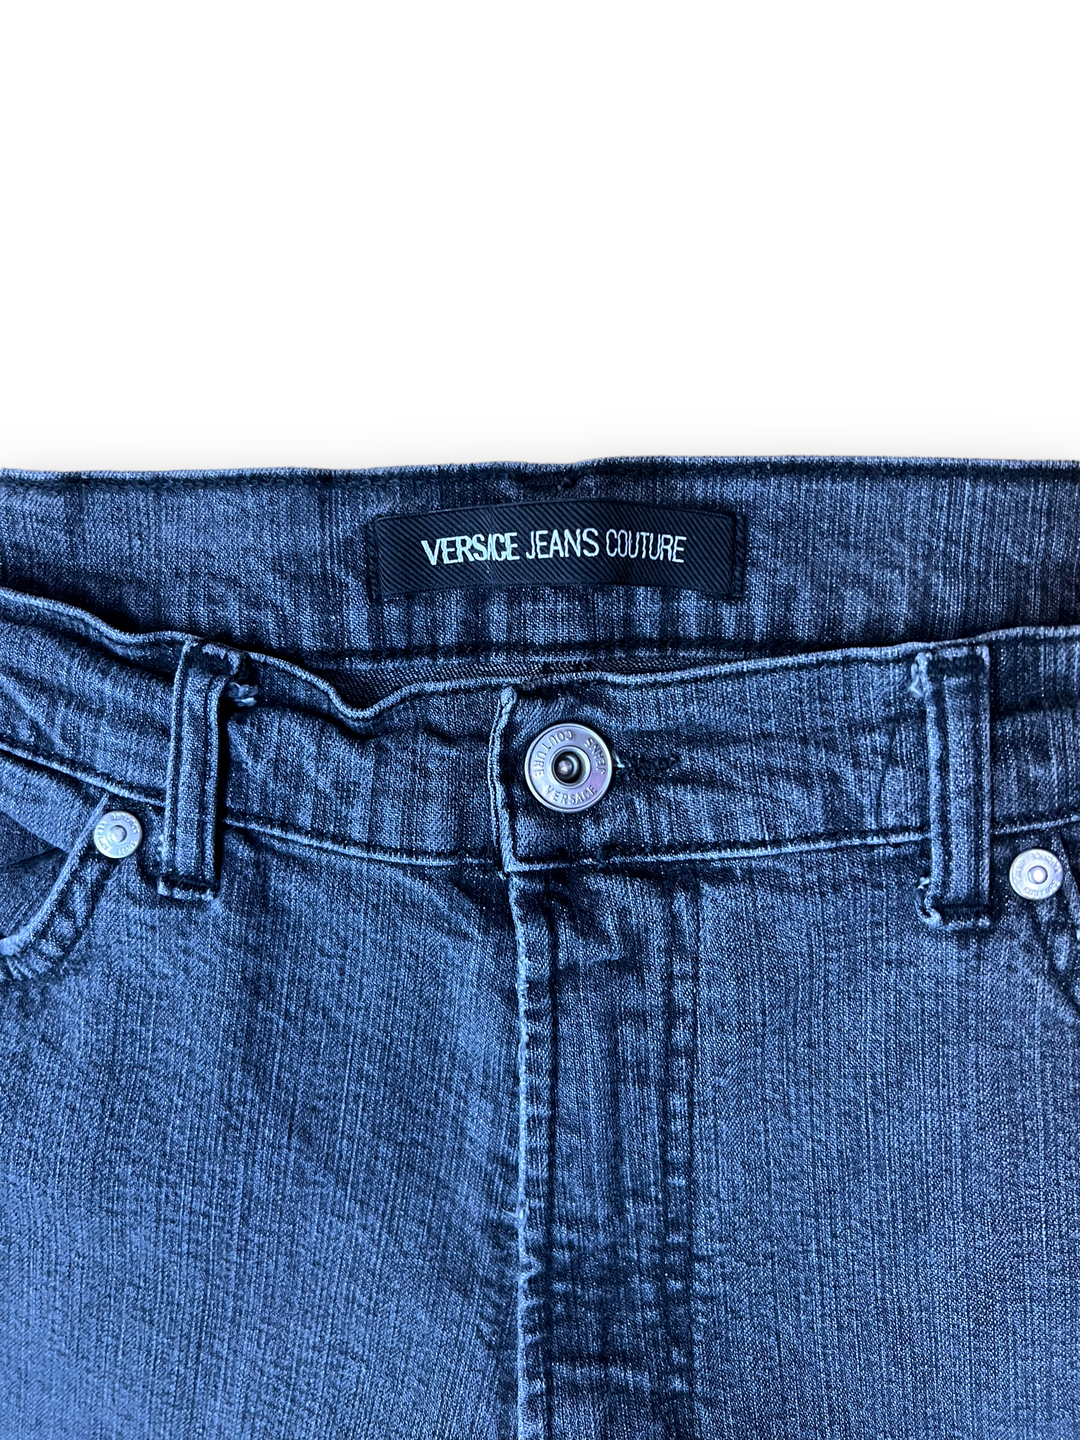 Versace Jeans Men's Large